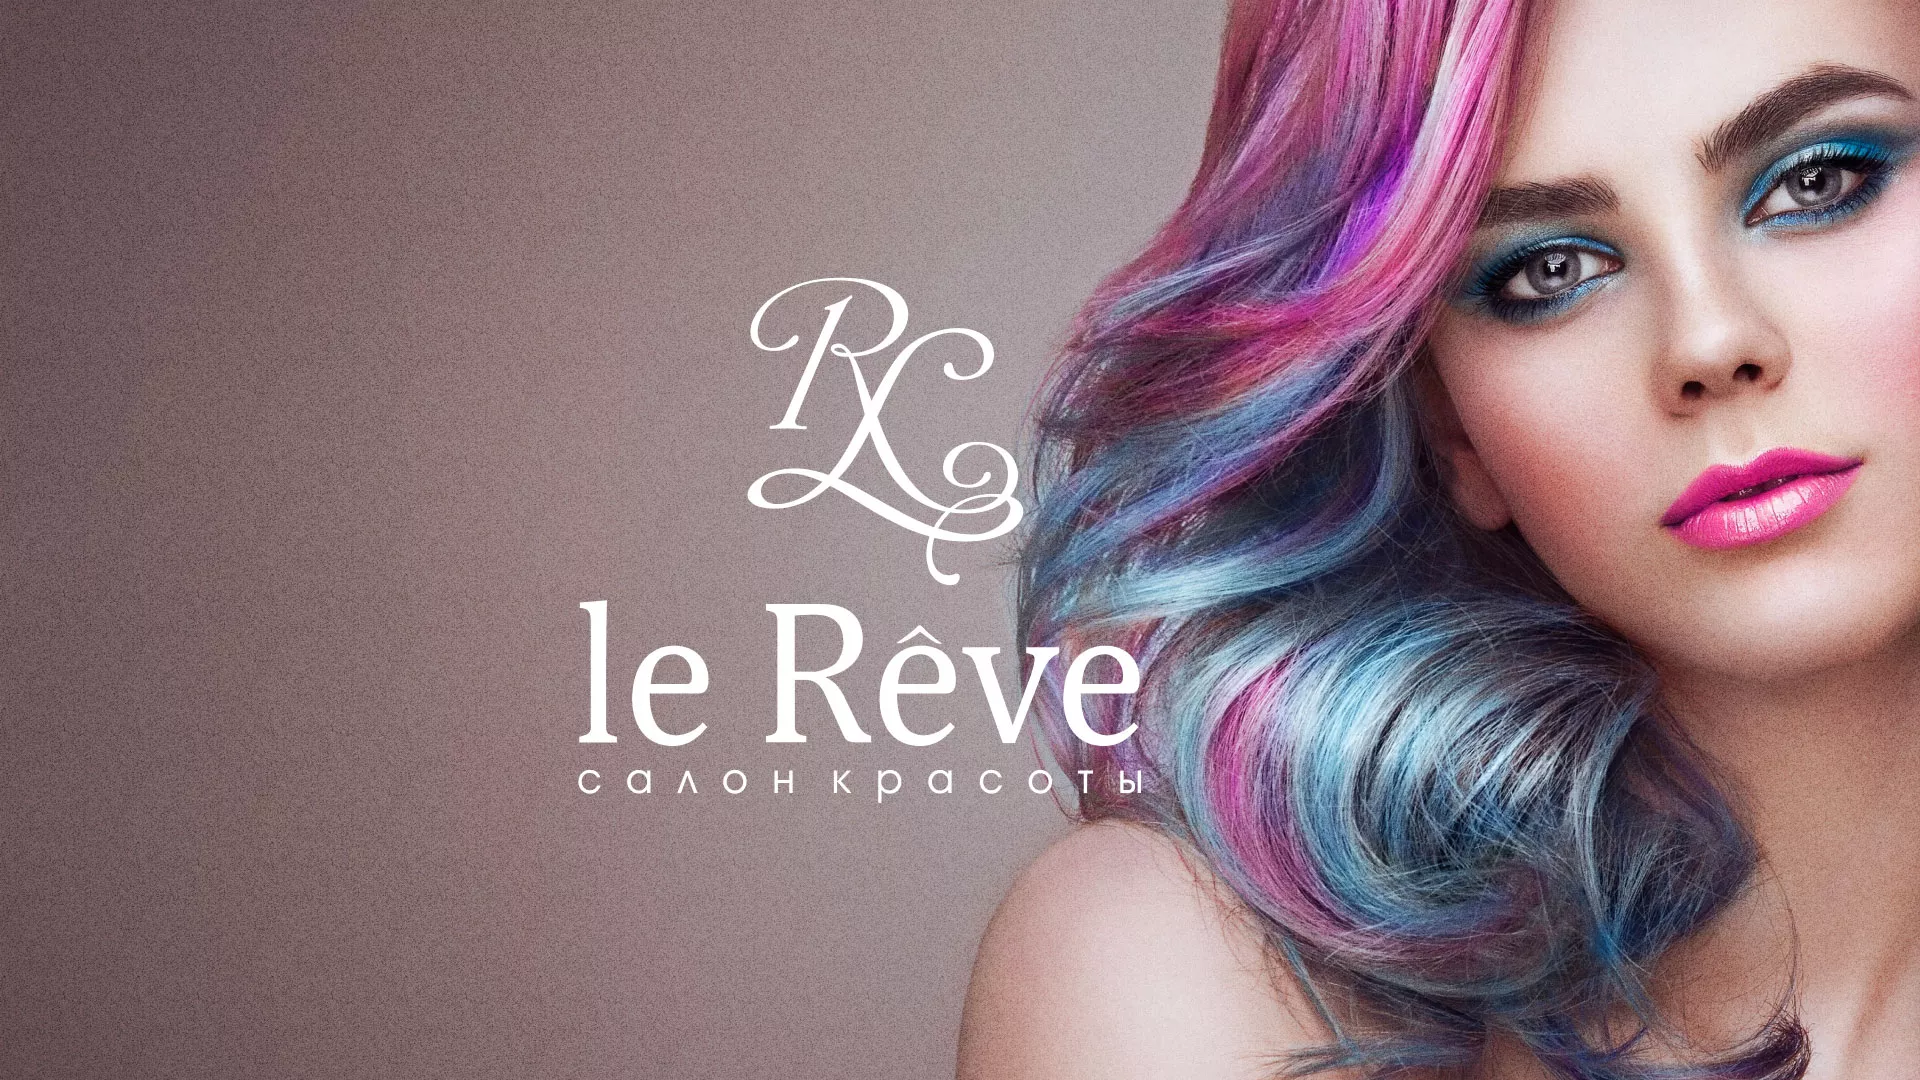 Создание сайта для салона красоты «Le Reve» в Самаре